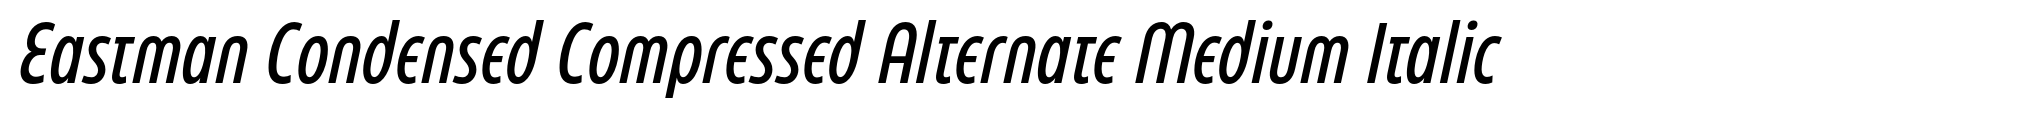 Eastman Condensed Compressed Alternate Medium Italic image